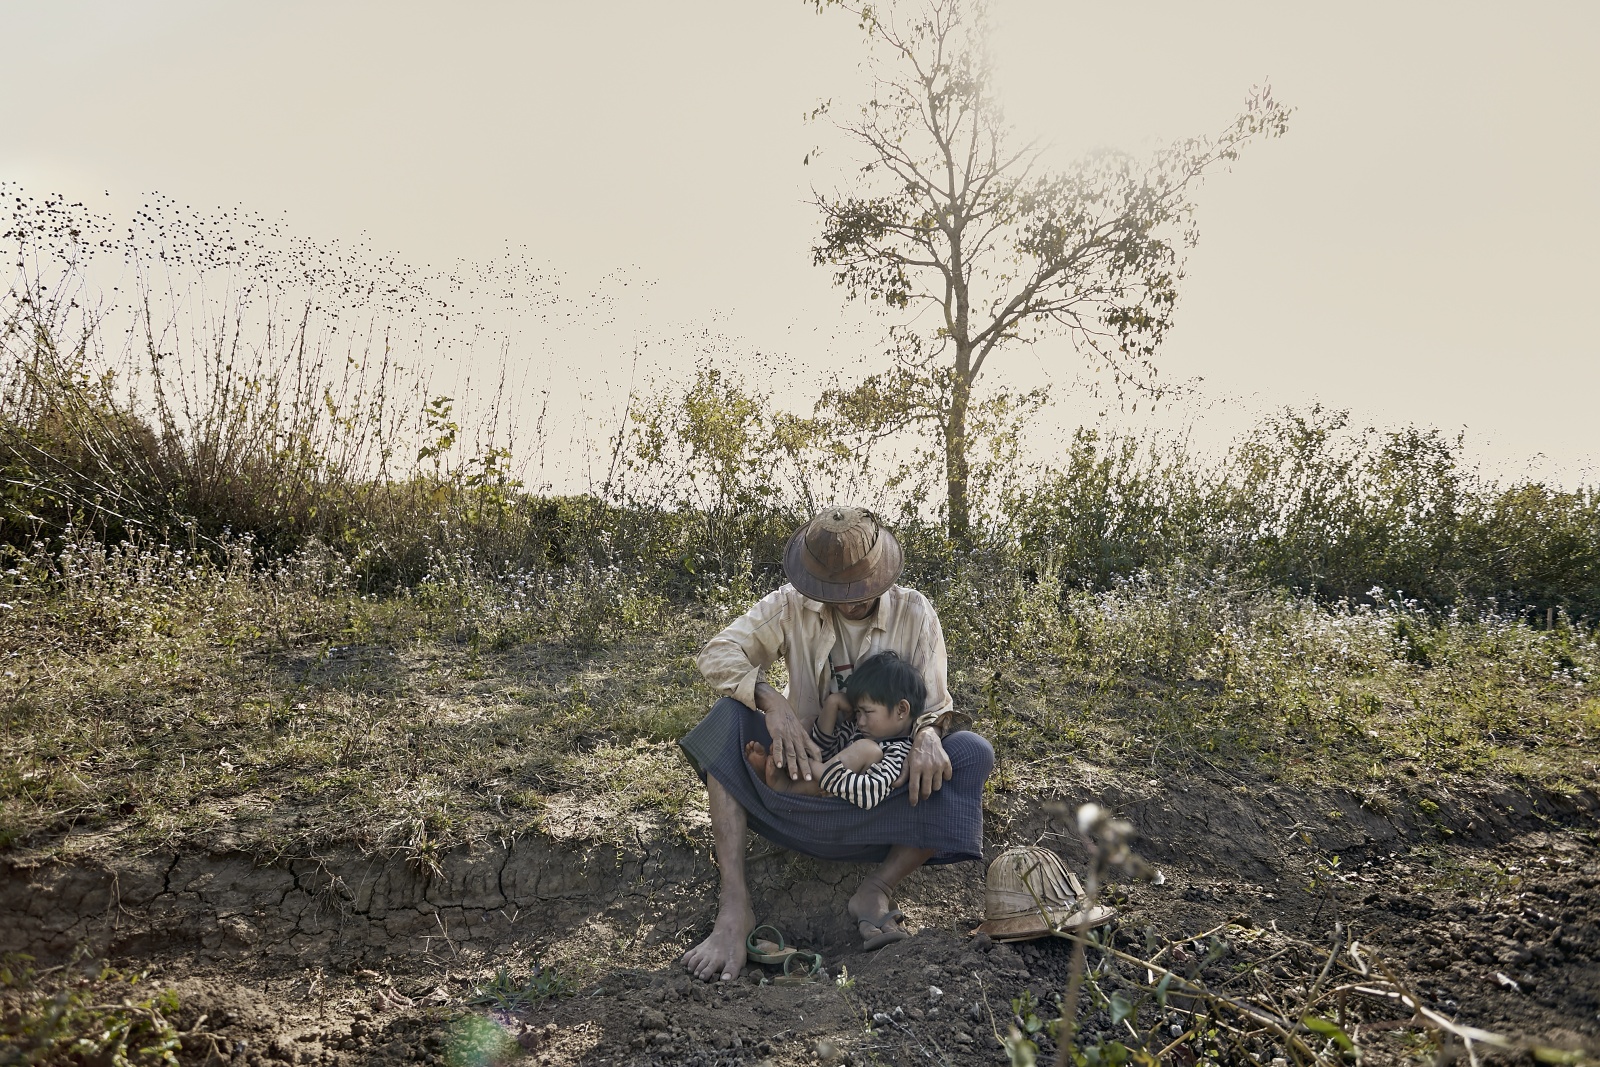 Durante la pausa dal lavoro, un padre agricoltore si prende cura della sua bambina.
During a work break, a farmer father takes care of his daughter.
 
© Gianfranco Ferraro
 